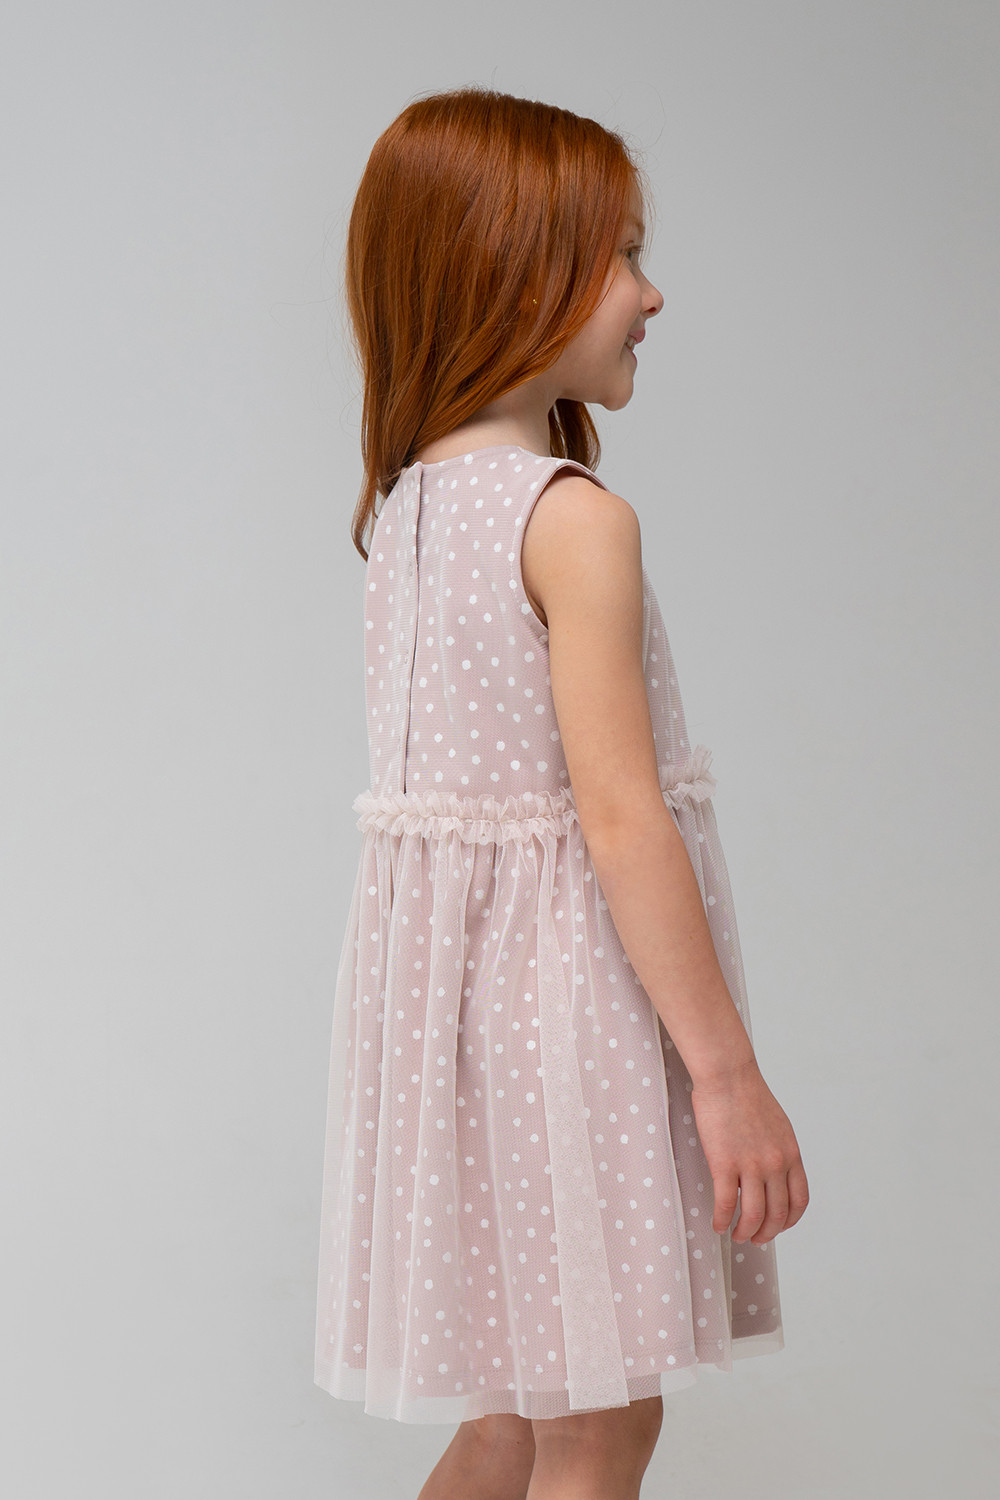 ≡ ДЕТСКИЕ ТРИКОТАЖНЫЕ ПЛАТЬЯ. ᐉ Купить летние трикотажные платья для девочки недорого в розницу